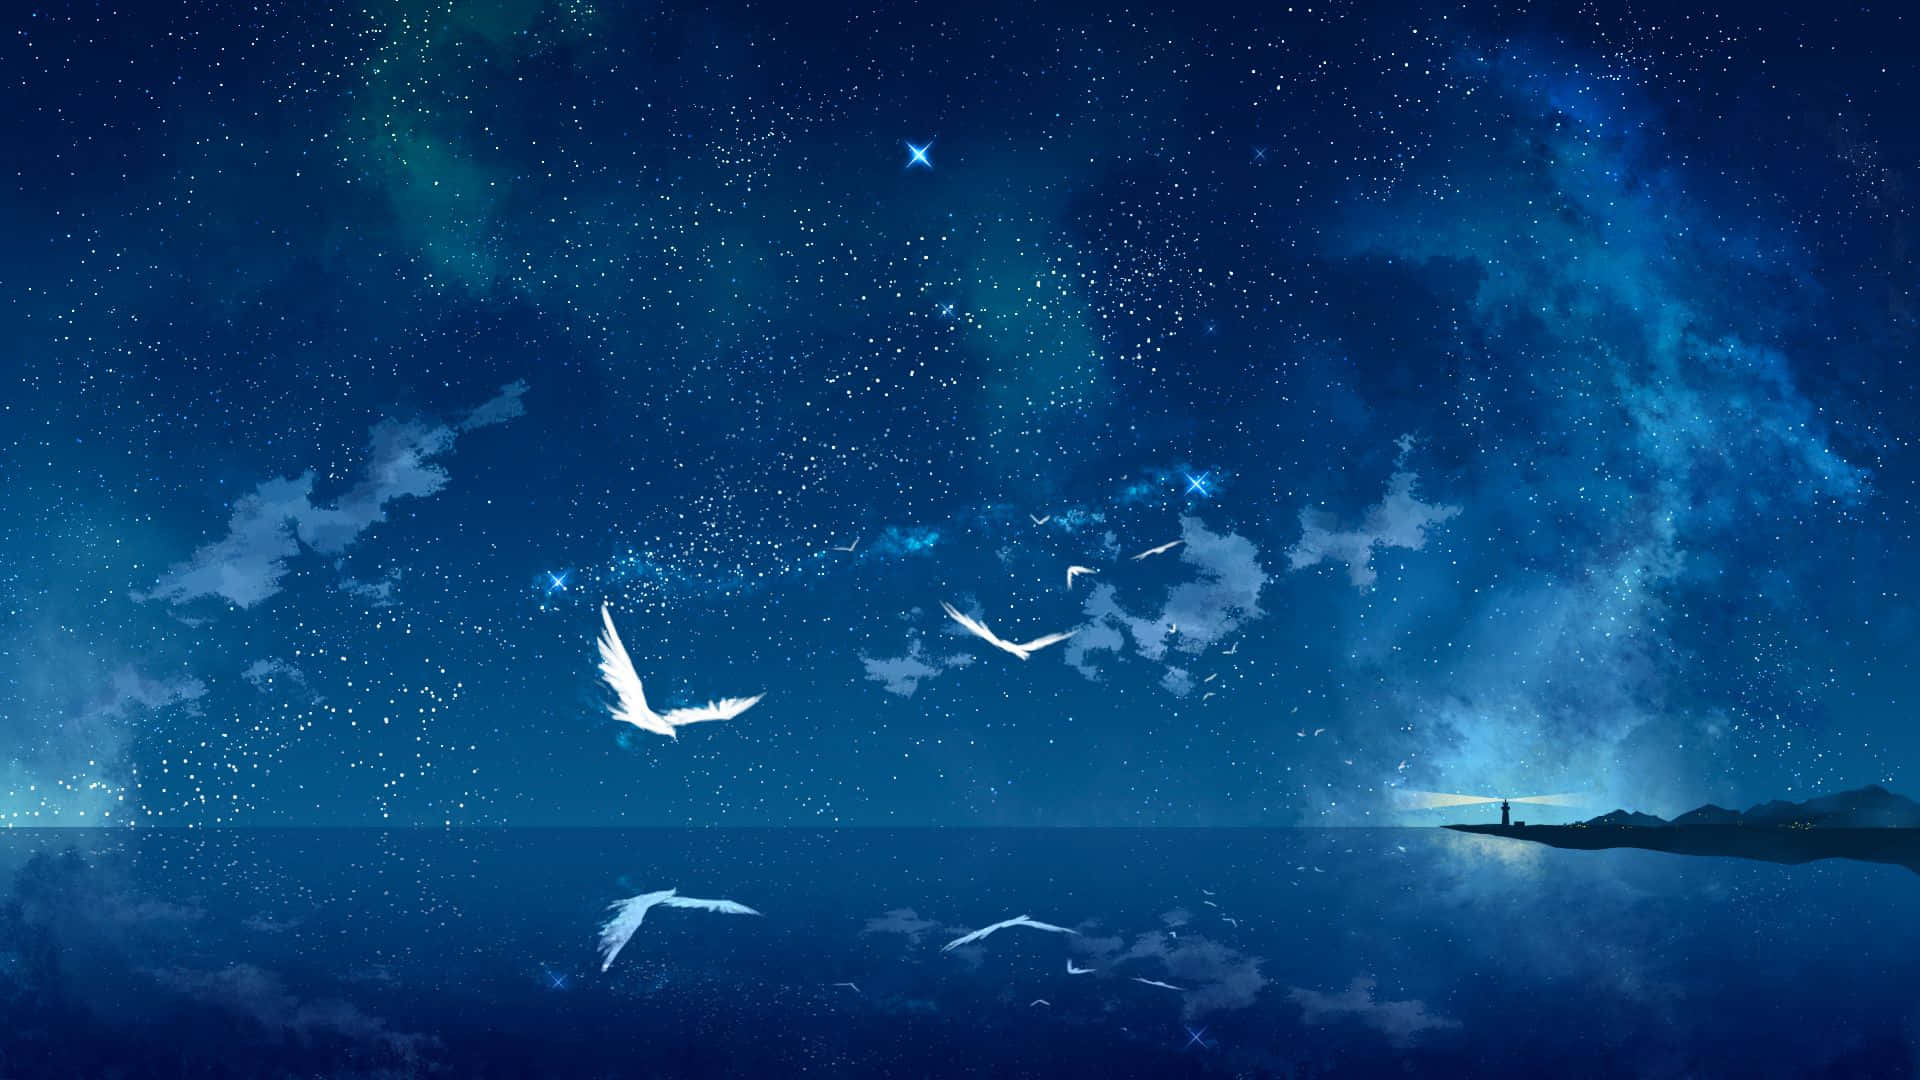 Tauchensie Ein In Eine Welt Voller Träume Und Anime Bei Der Anime Night! Wallpaper